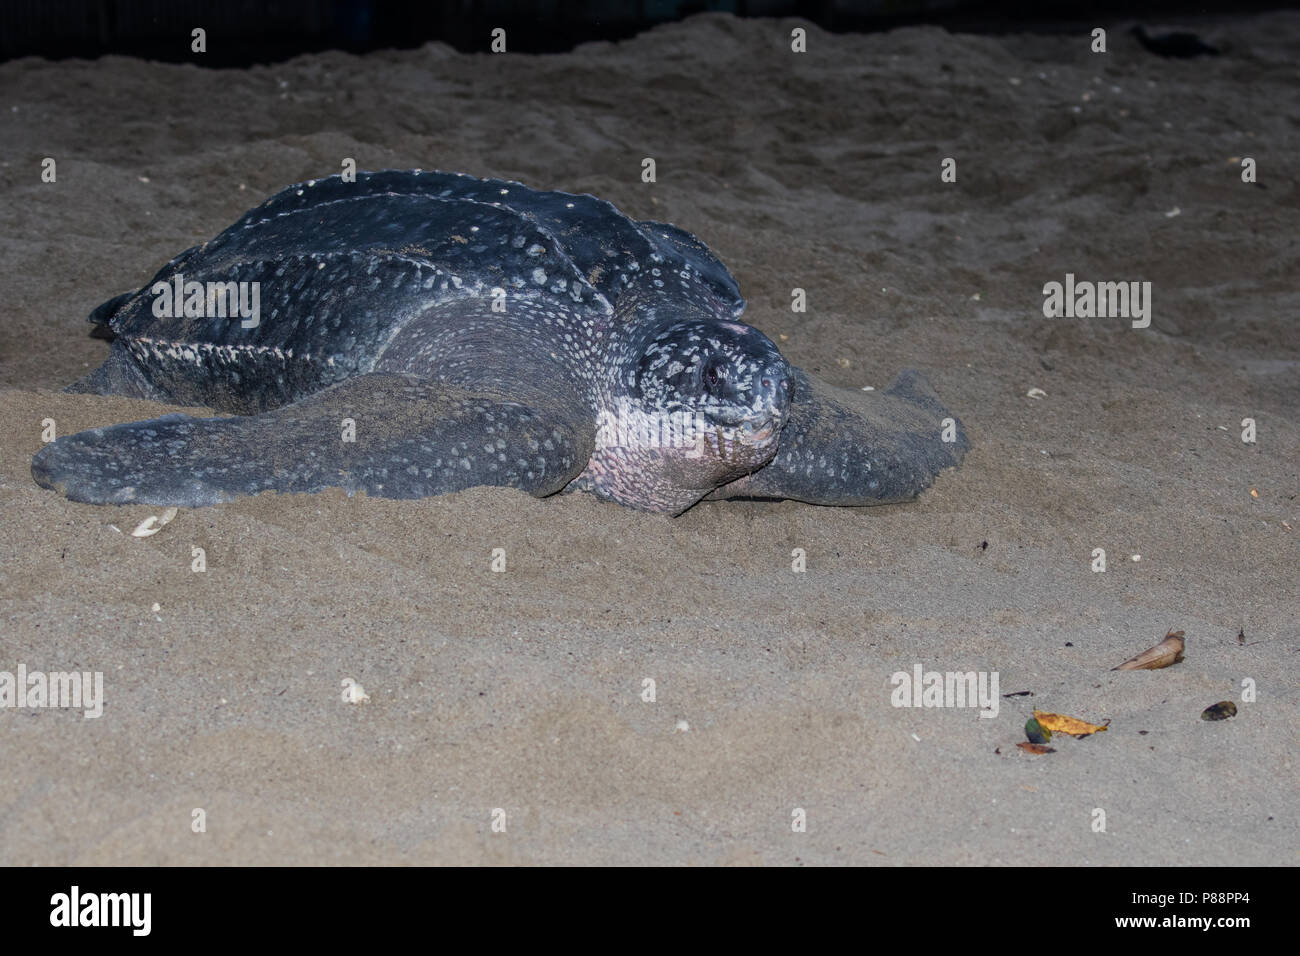 Lederschildpad op strand van de Trinidad ; Tortue luth (Dermochelys coriacea), sur une plage de la Trinité Banque D'Images